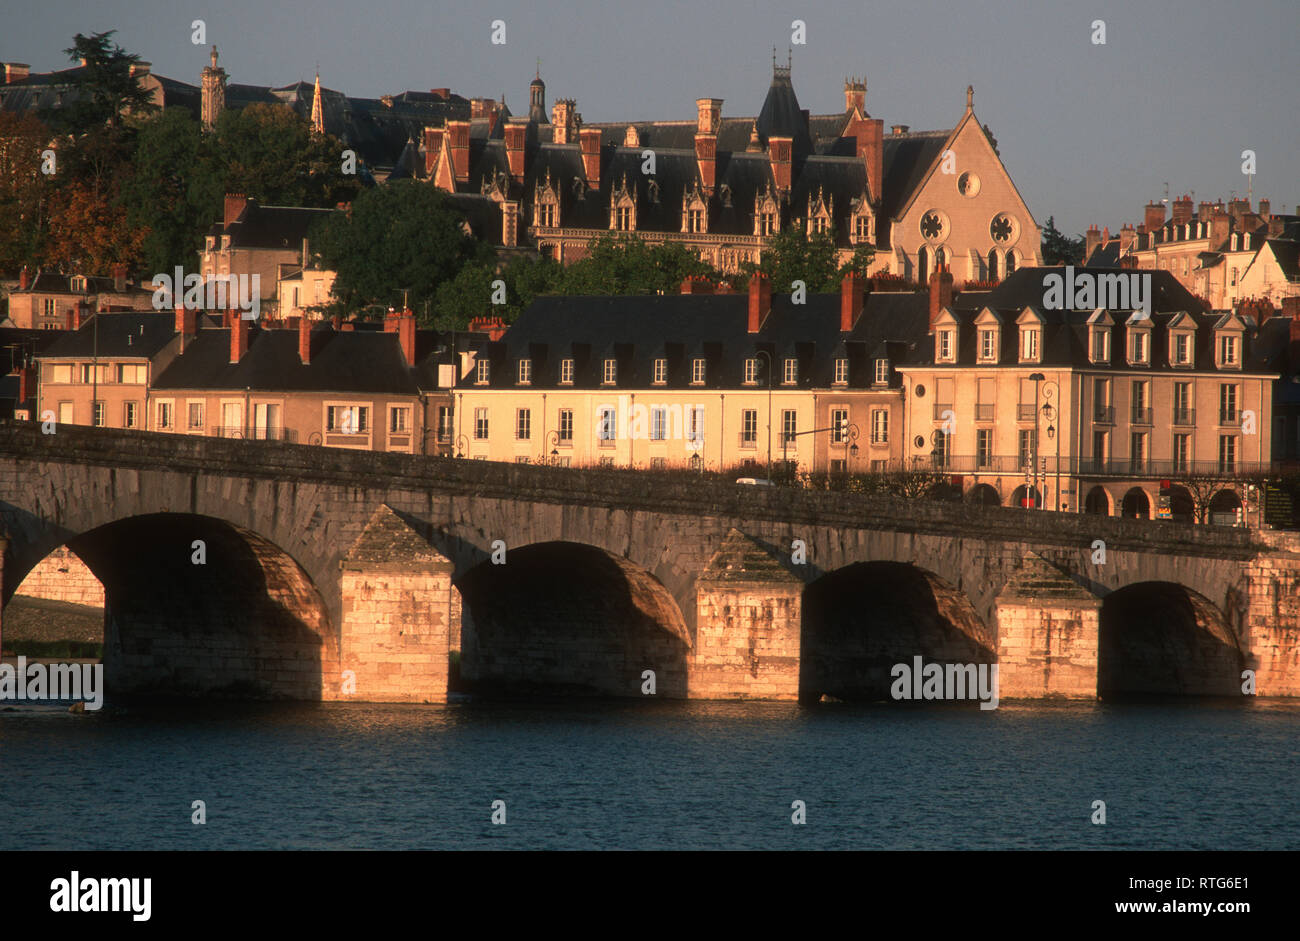 Blois. Jacques-Gabriel pont sur la Loire, Loir et Cher, France, Europe Banque D'Images